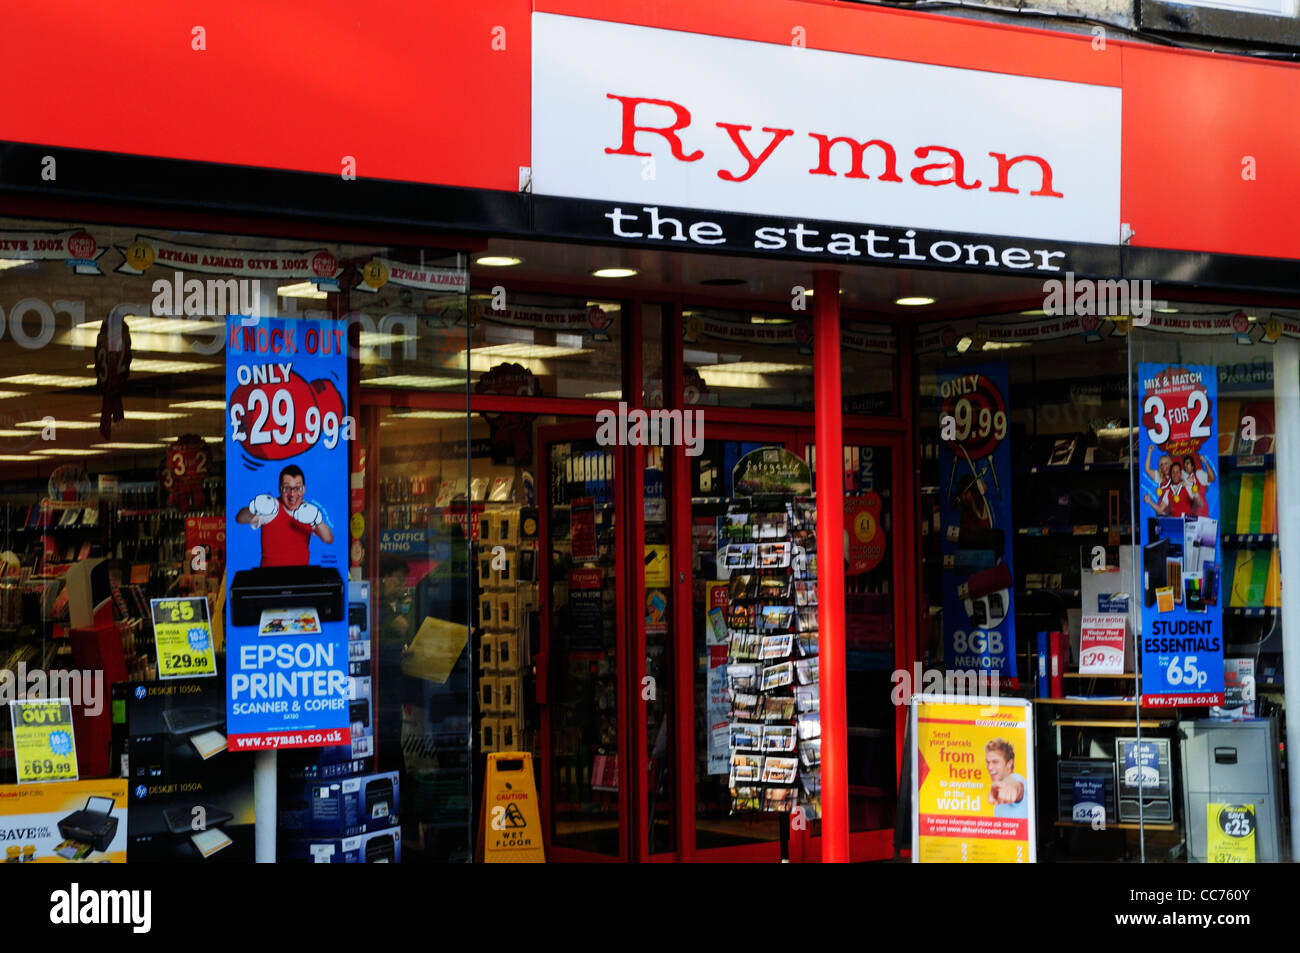 Ryman The Stationer Shop, Cambridge, England, UK Stock Photo